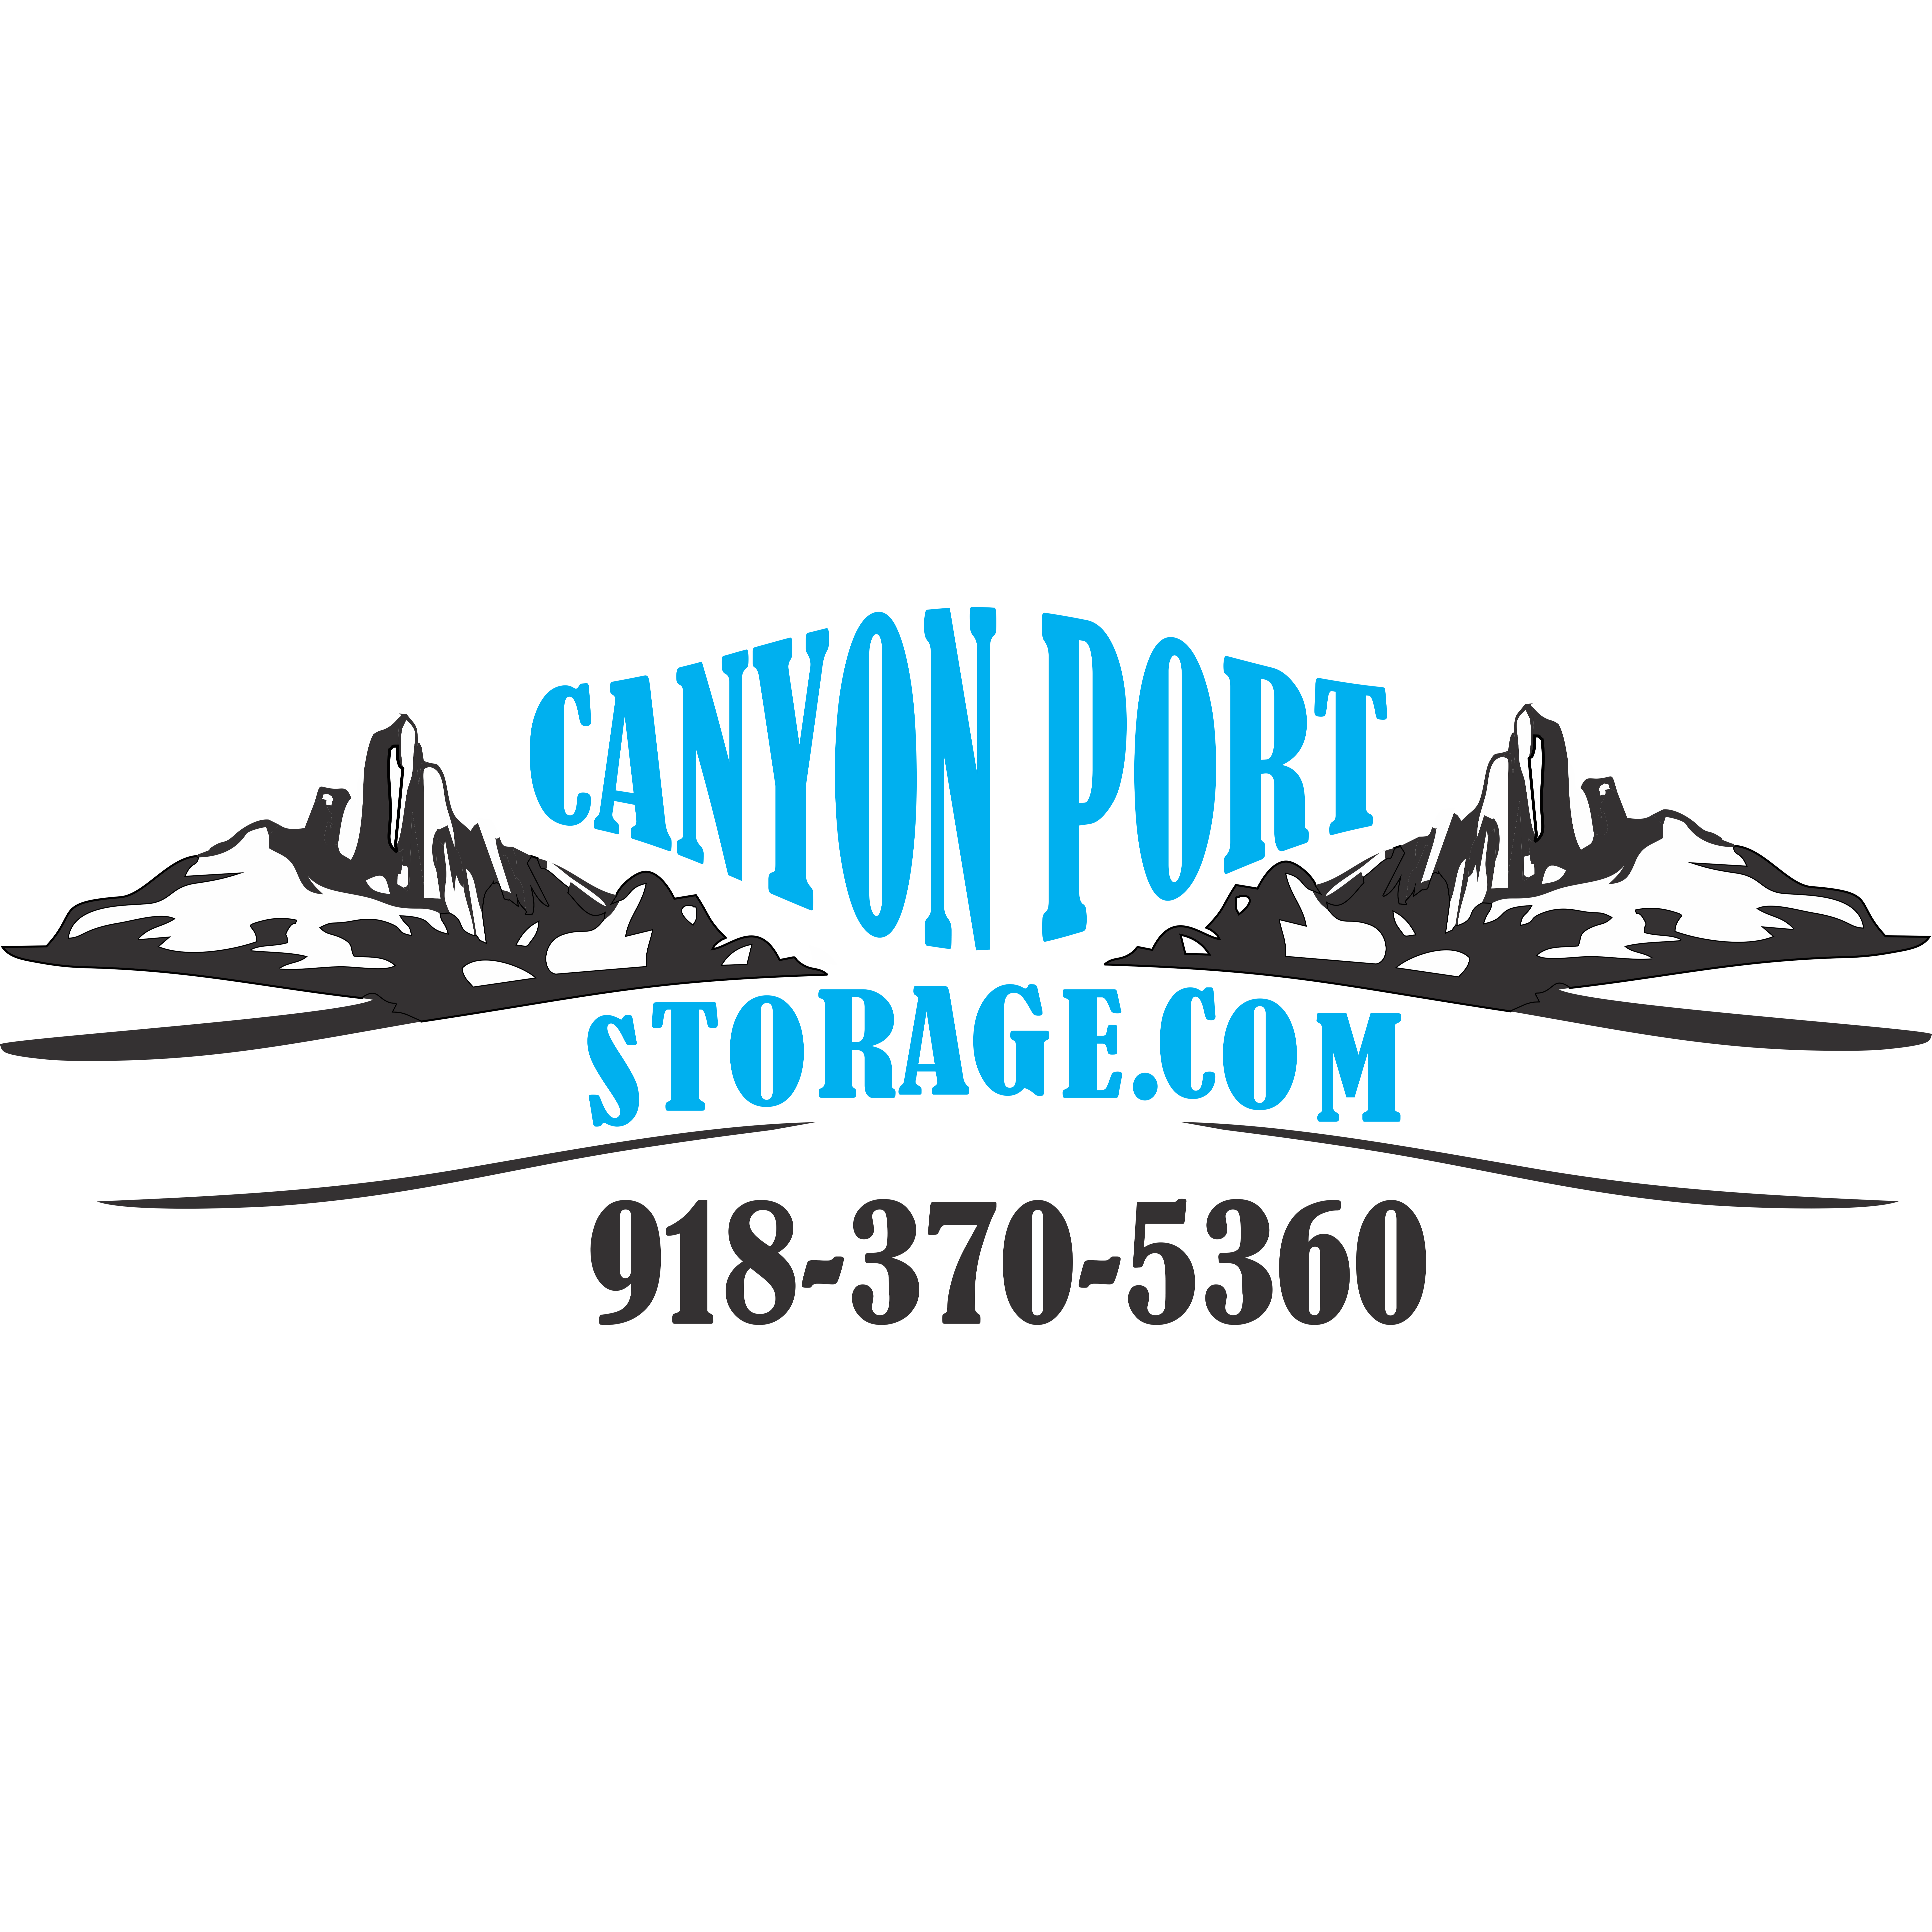 Canyon Port Storage - Catoosa, OK 74015 - (918)370-5360 | ShowMeLocal.com